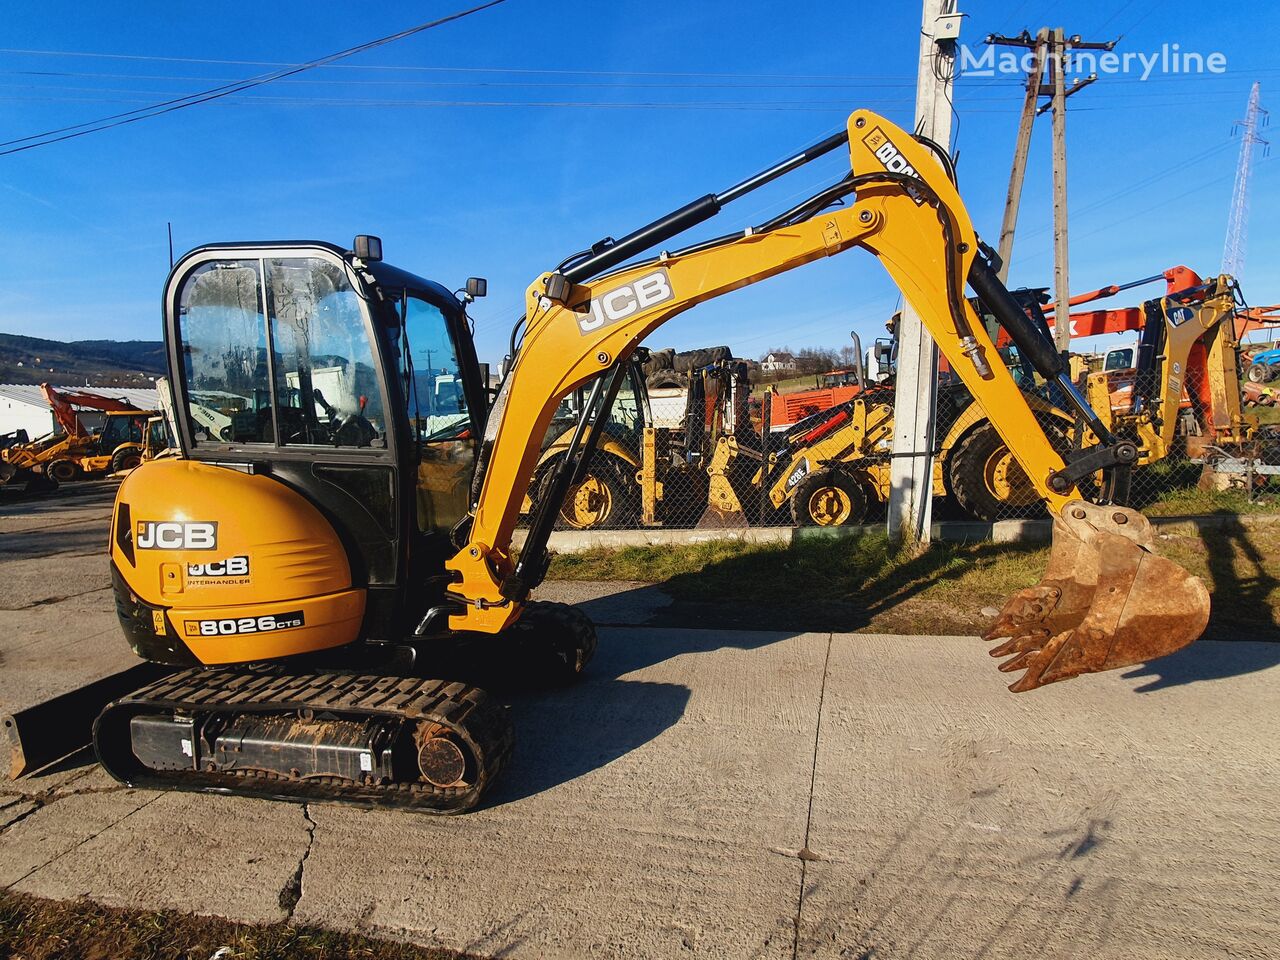 JCB 8026 CTS mini excavator